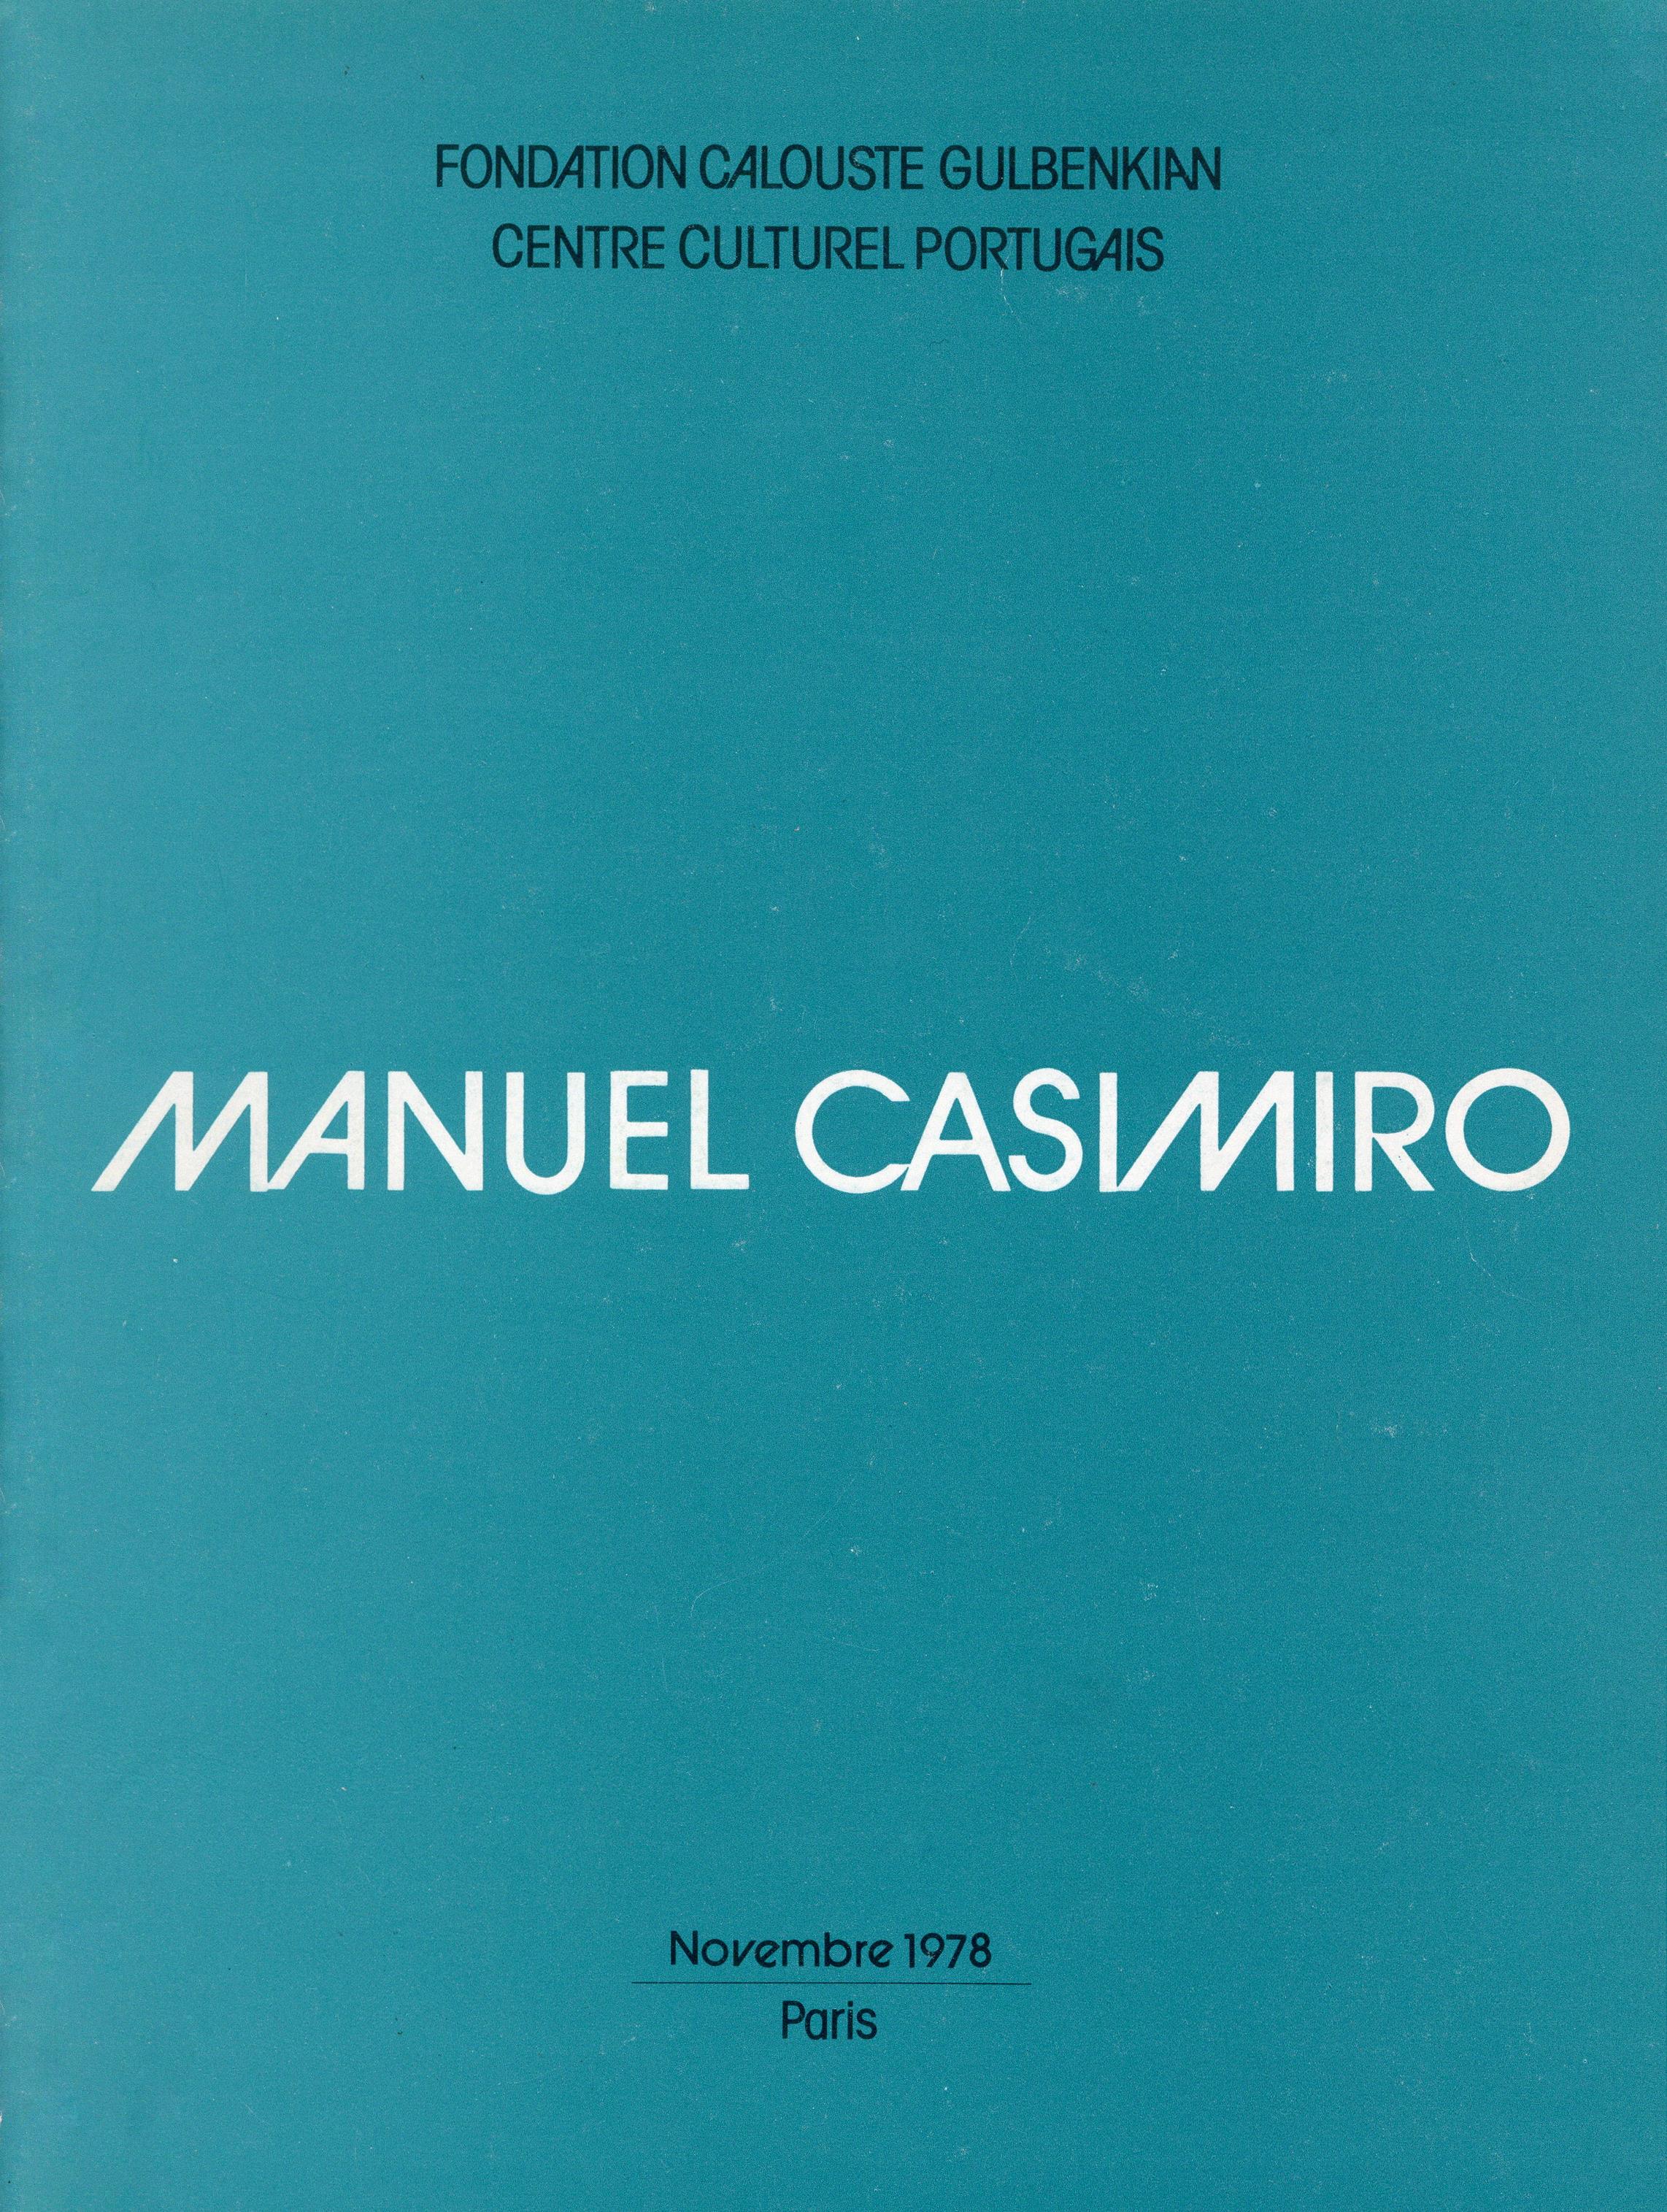 Manuel Casimiro